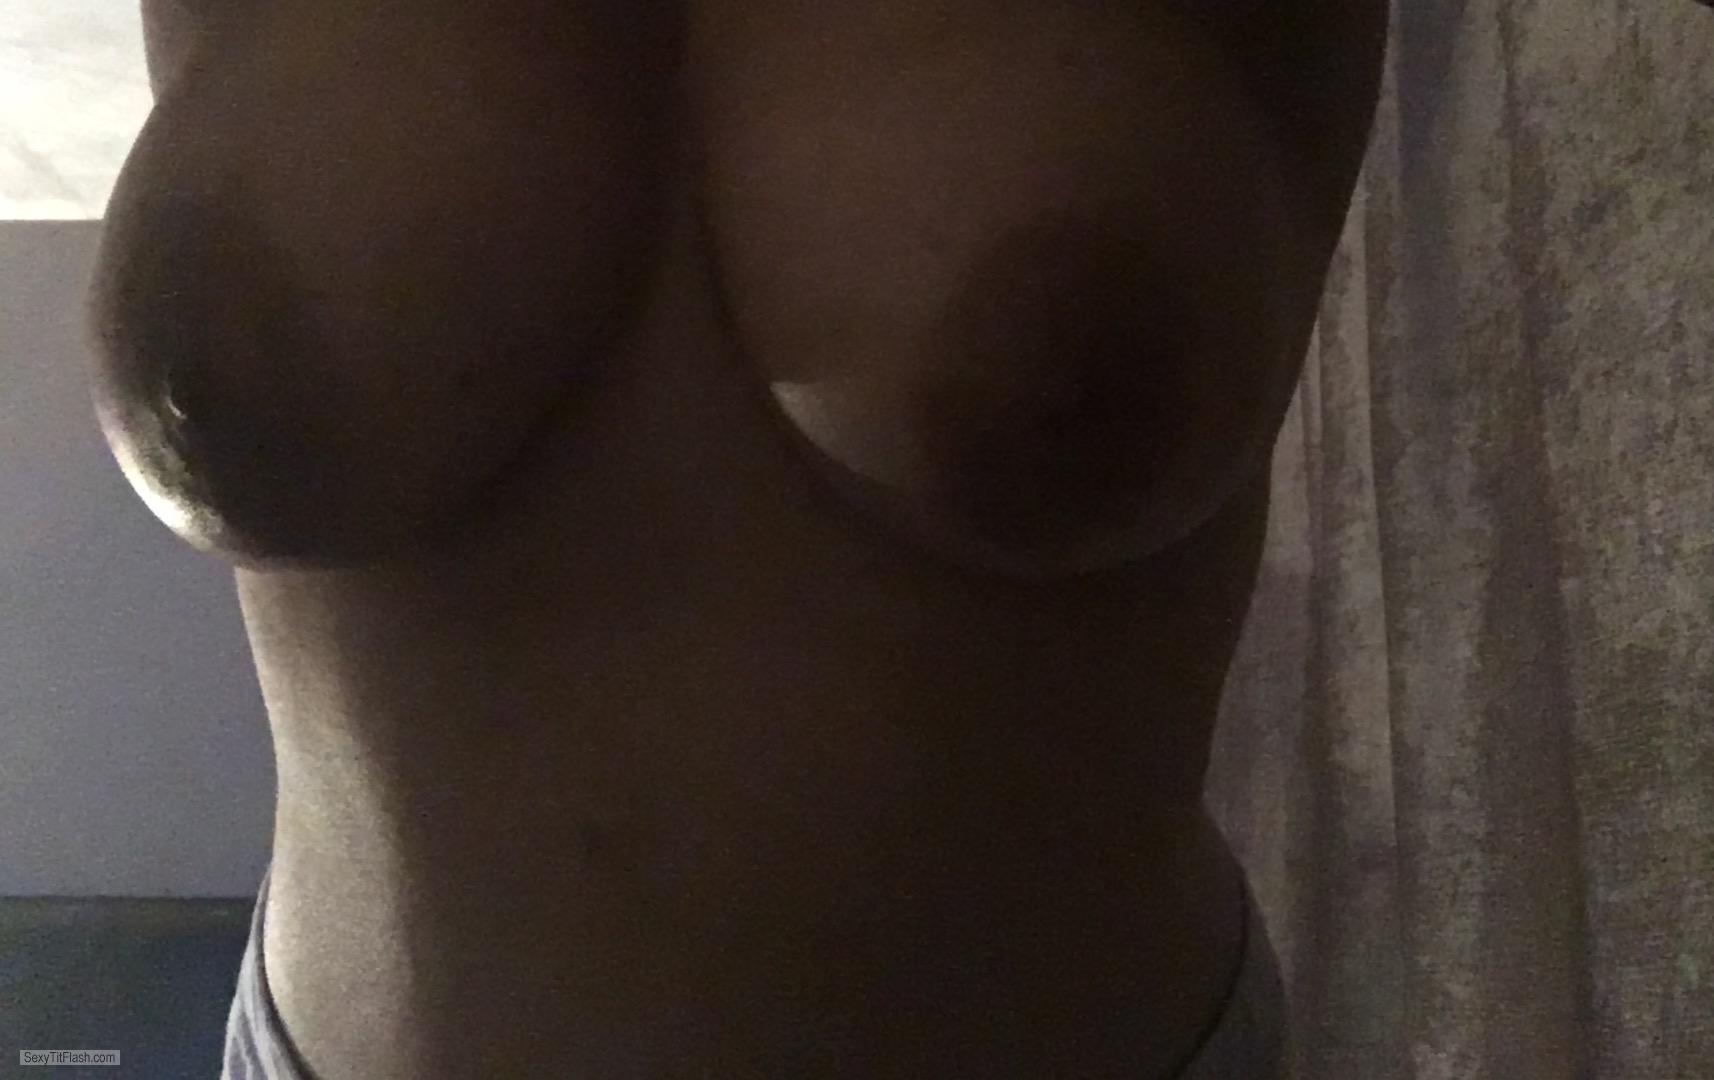 Tit Flash: My Medium Tits - Topless Yum from United Kingdom